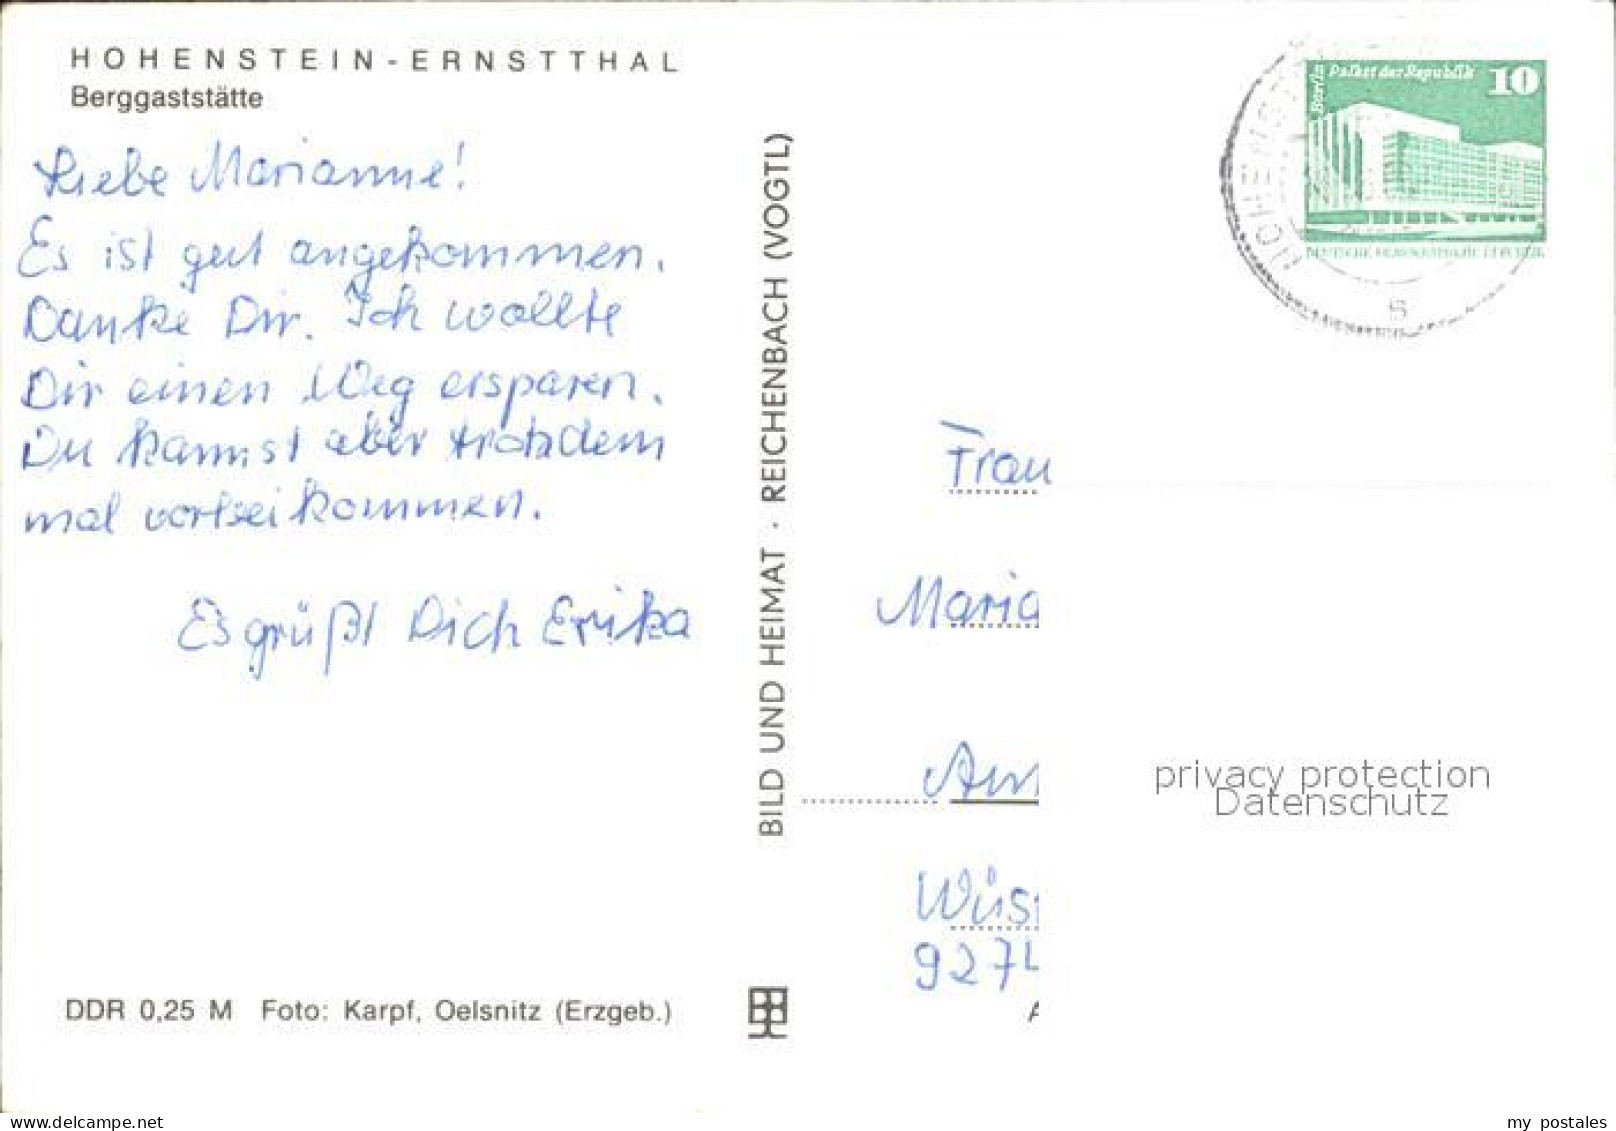 72137095 Hohenstein-Ernstthal Hohenstein Berggaststaette Hohenstein-Ernstthal - Hohenstein-Ernstthal